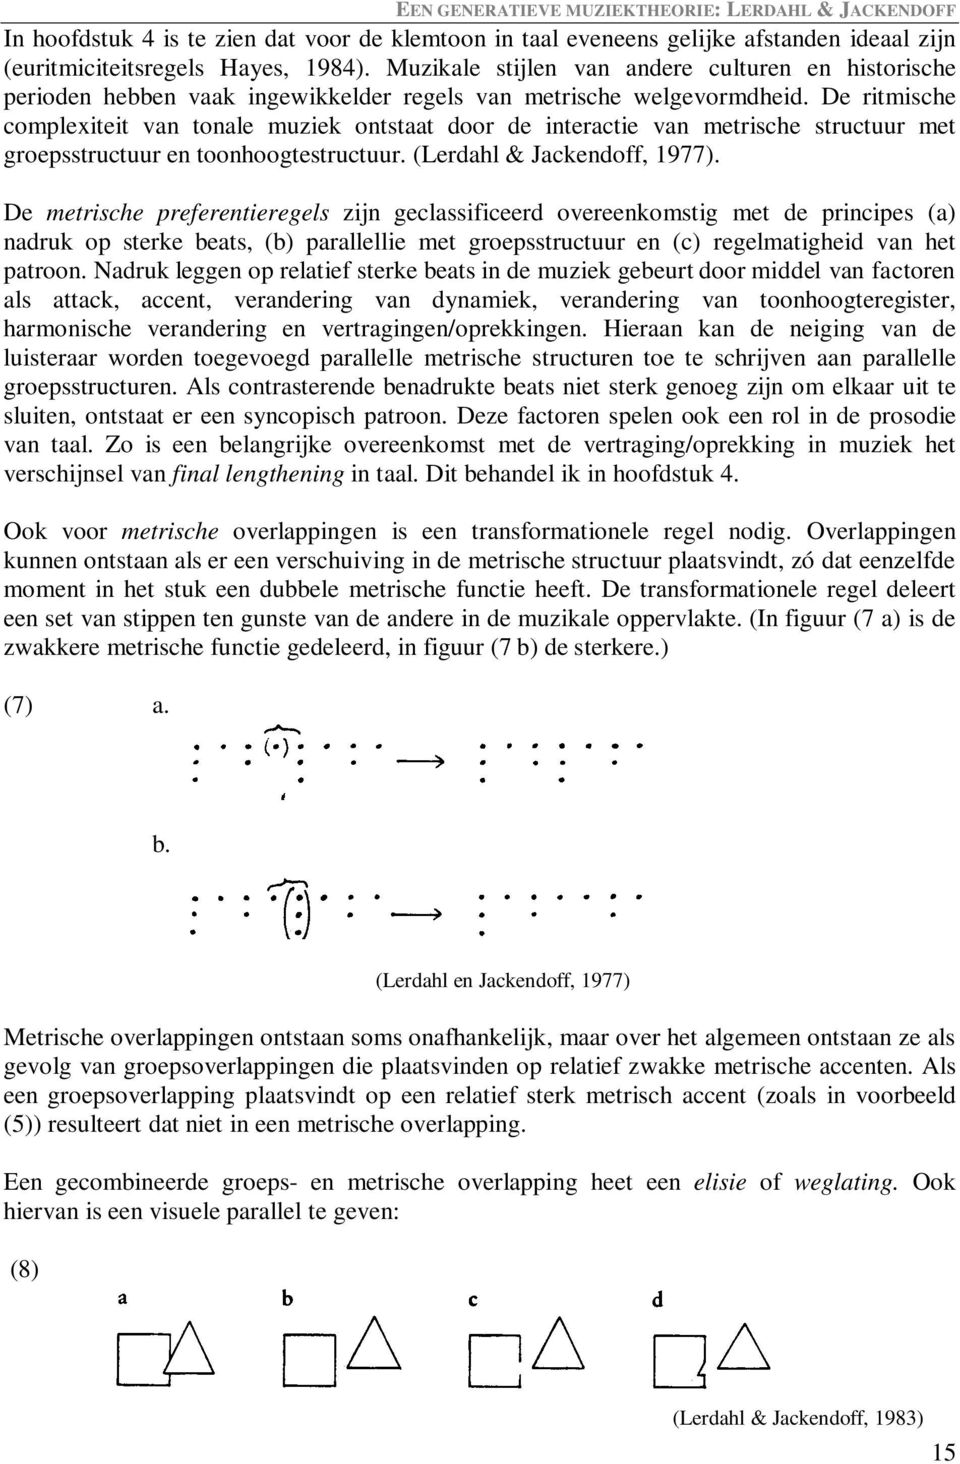 De ritmische complexiteit van tonale muziek ontstaat door de interactie van metrische structuur met groepsstructuur en toonhoogtestructuur. (Lerdahl & Jackendoff, 1977).